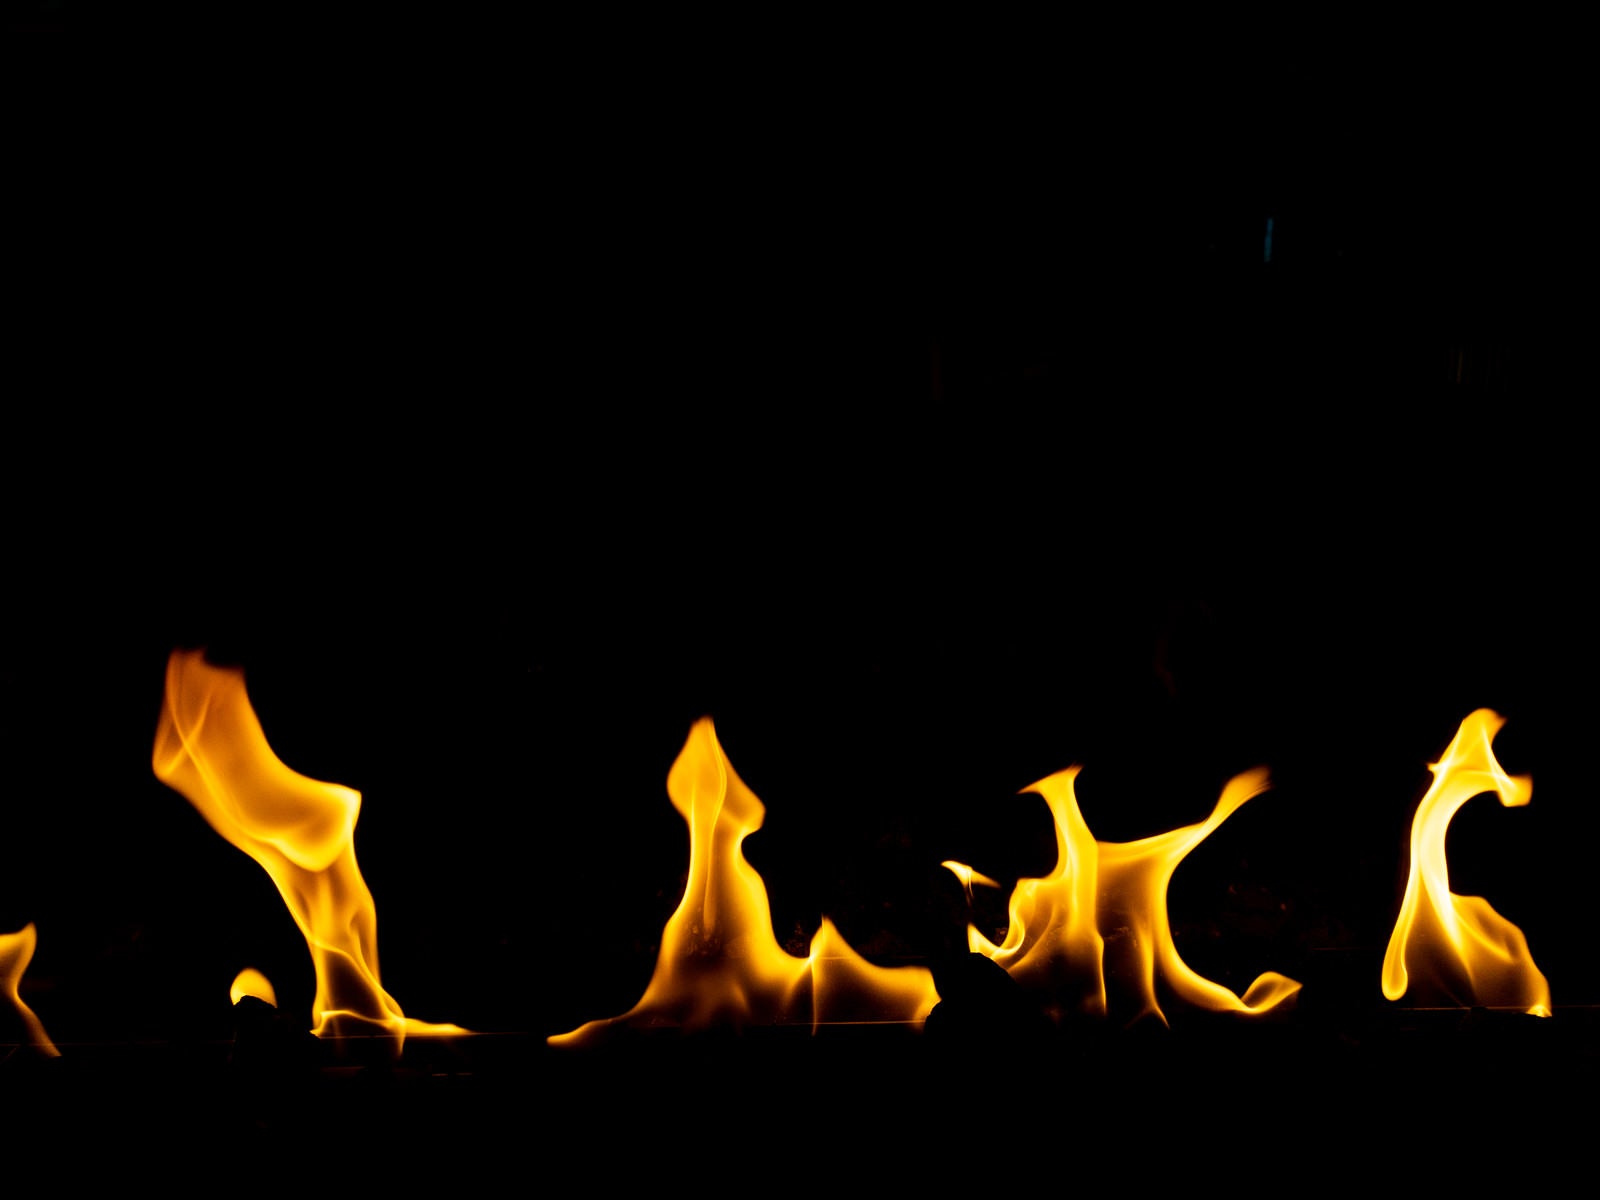 「メラメラと揺れる炎の様子」の写真